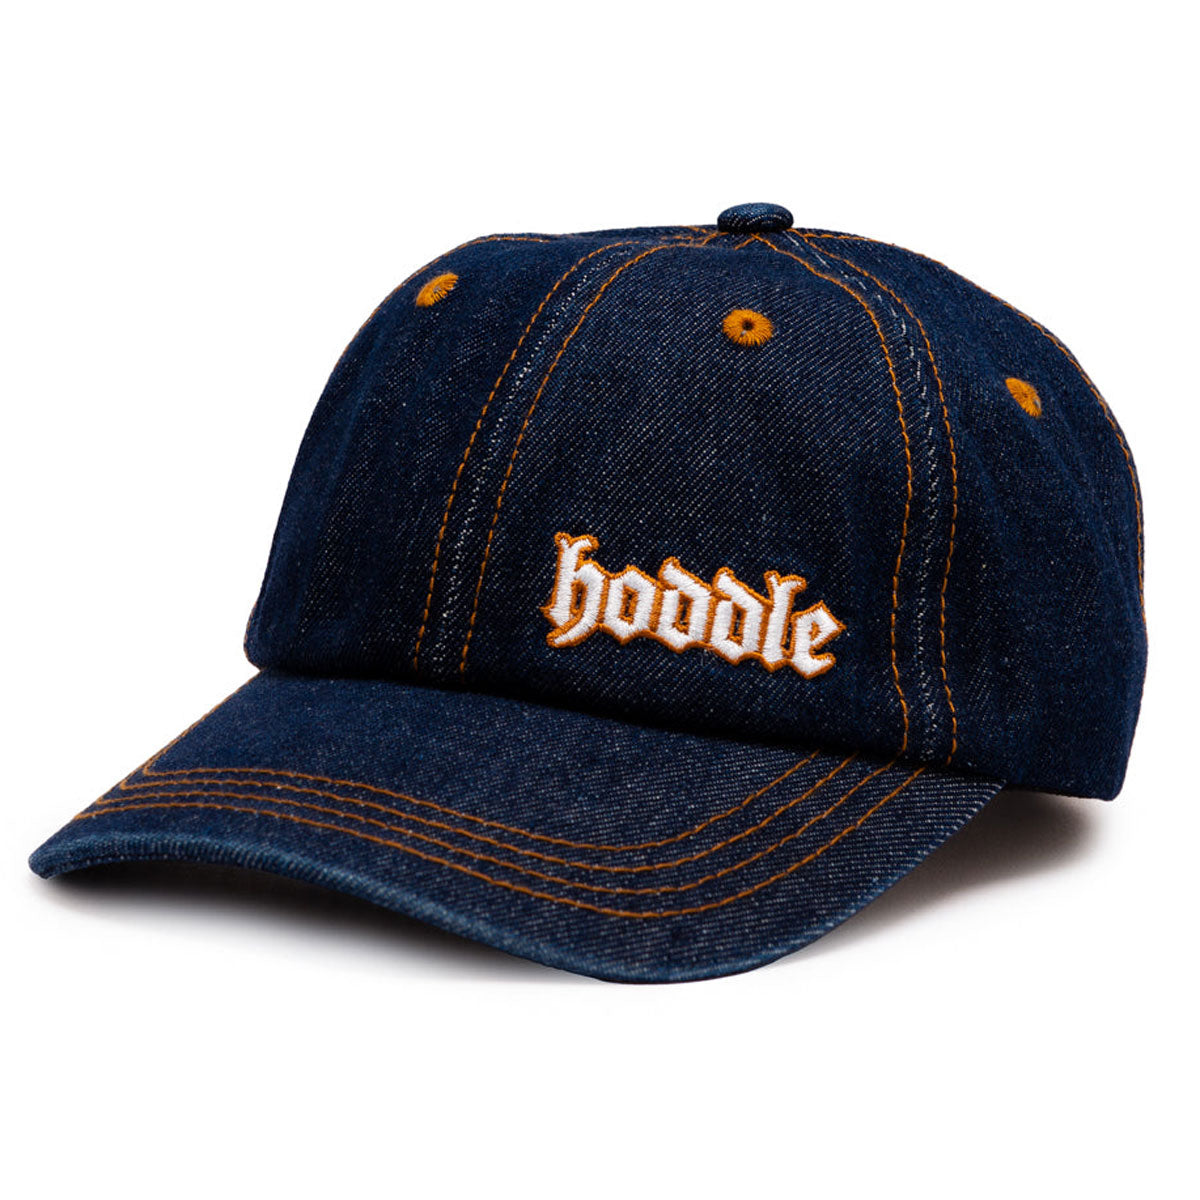 Hoddle Logo Denim Hat - Indigo Denim image 1